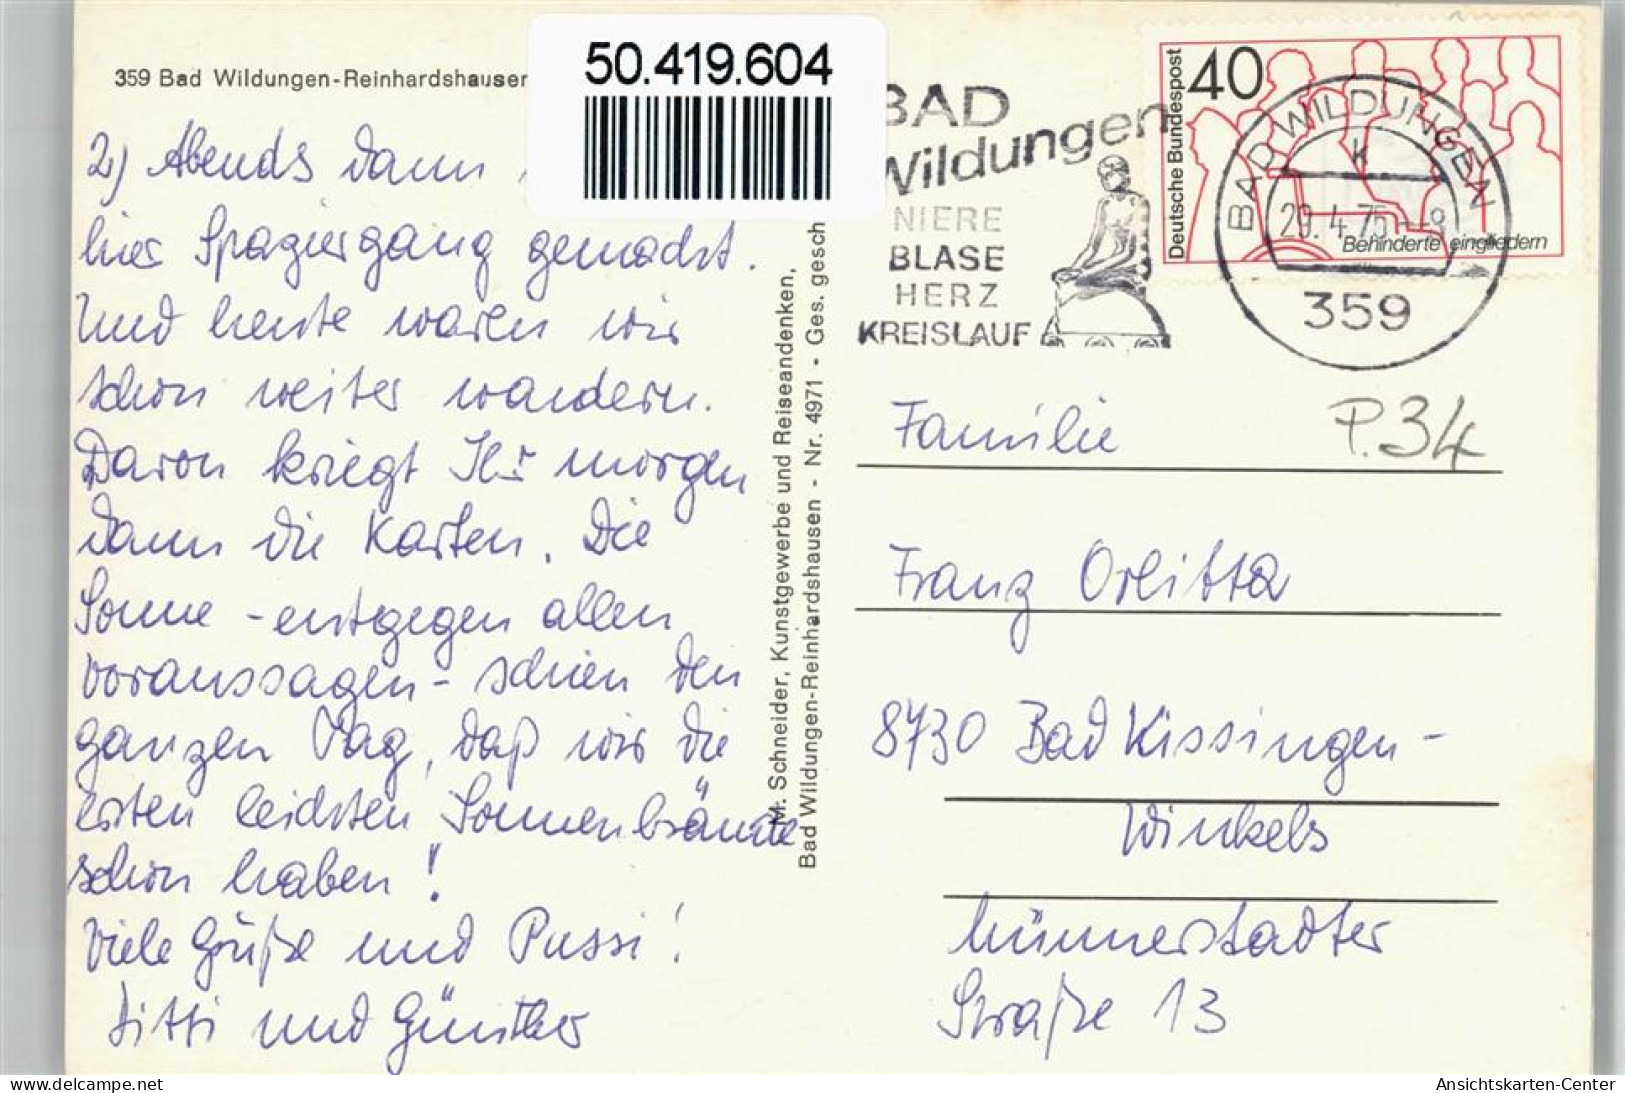 50419604 - Bad Wildungen - Bad Wildungen